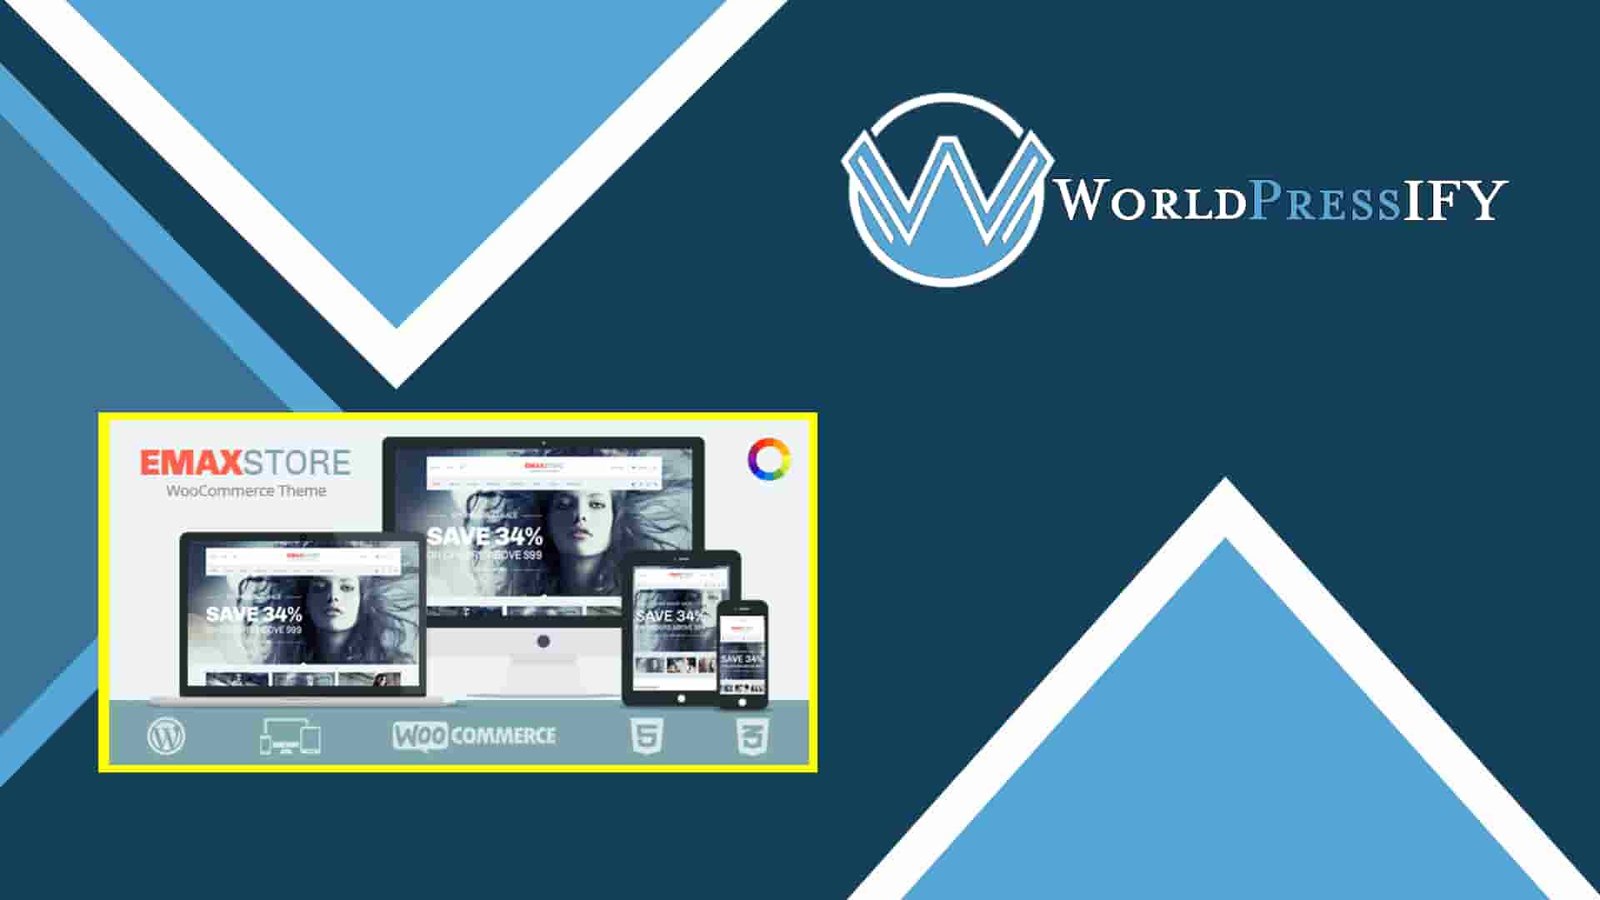 Woteen - Broadband and Telecom Business Template Kit - WorldPress IFY